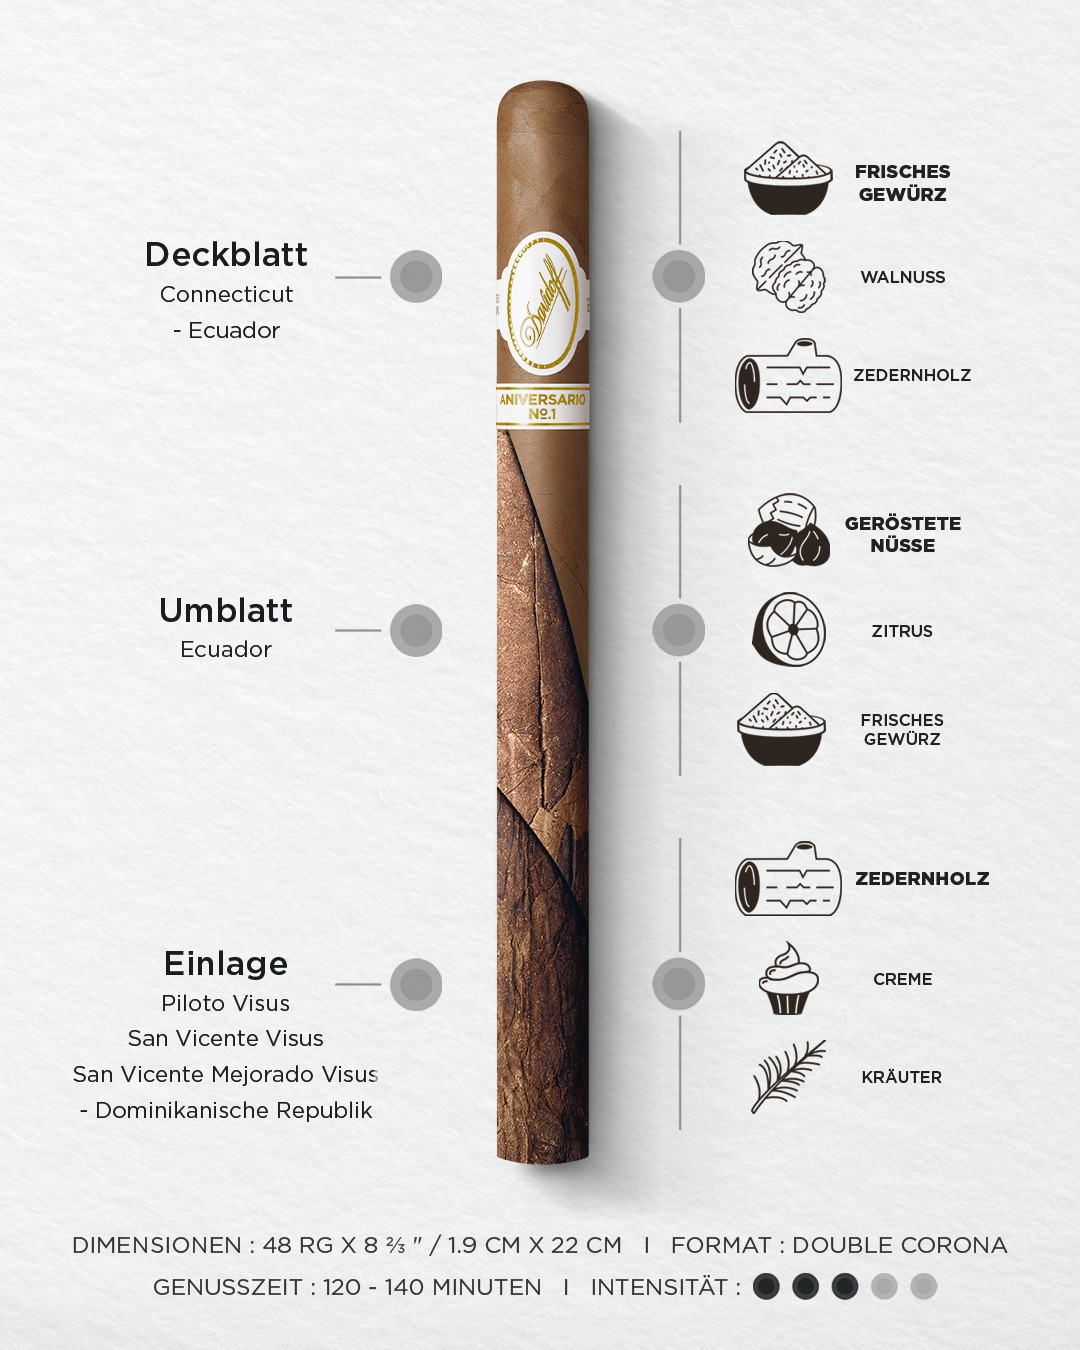 Detaillierte Geschmacksbeschreibung der Davidoff Aniversario No. 1 Limited Edition Collection inklusive Tabakherkunft, Hauptaromen, Dimensionen, Genussdauer und Intensität. 